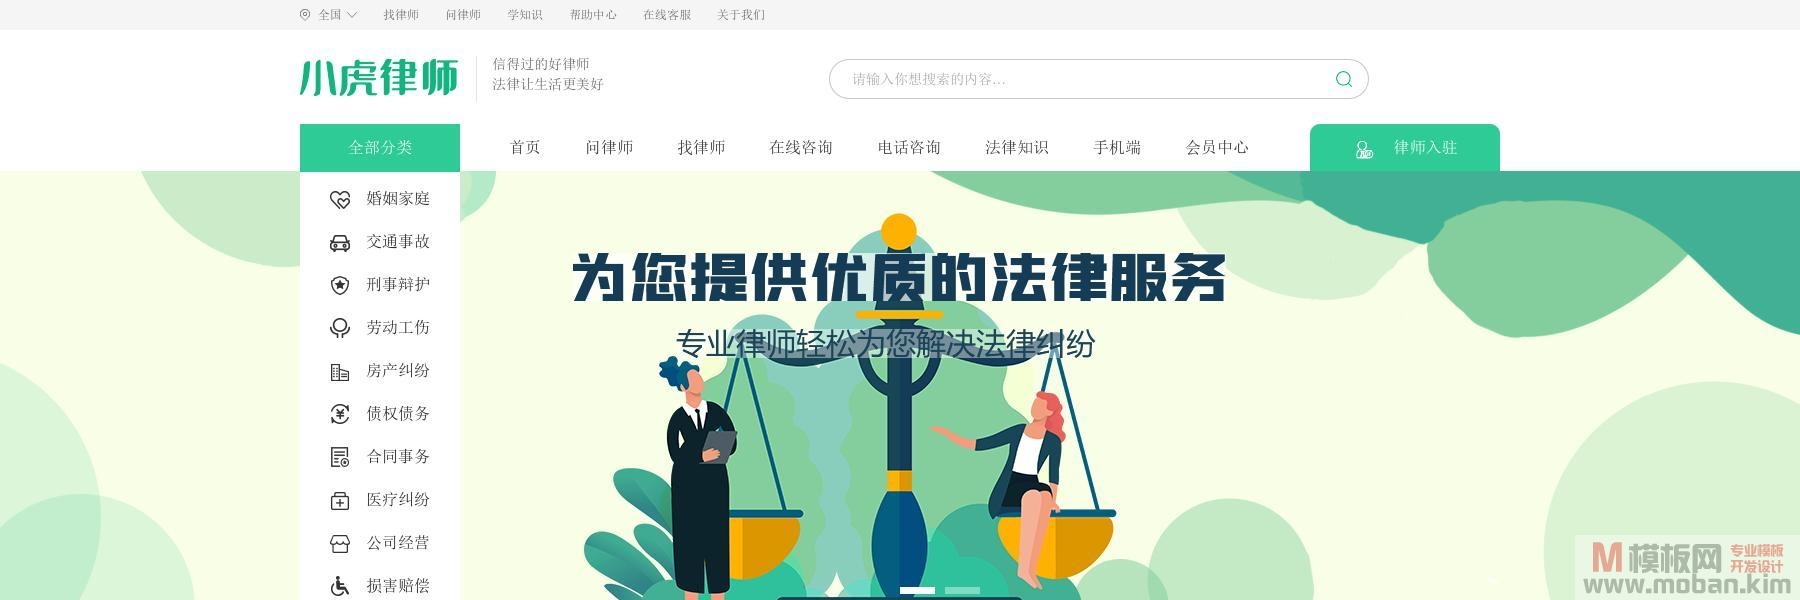 小虎律师法律门户网站